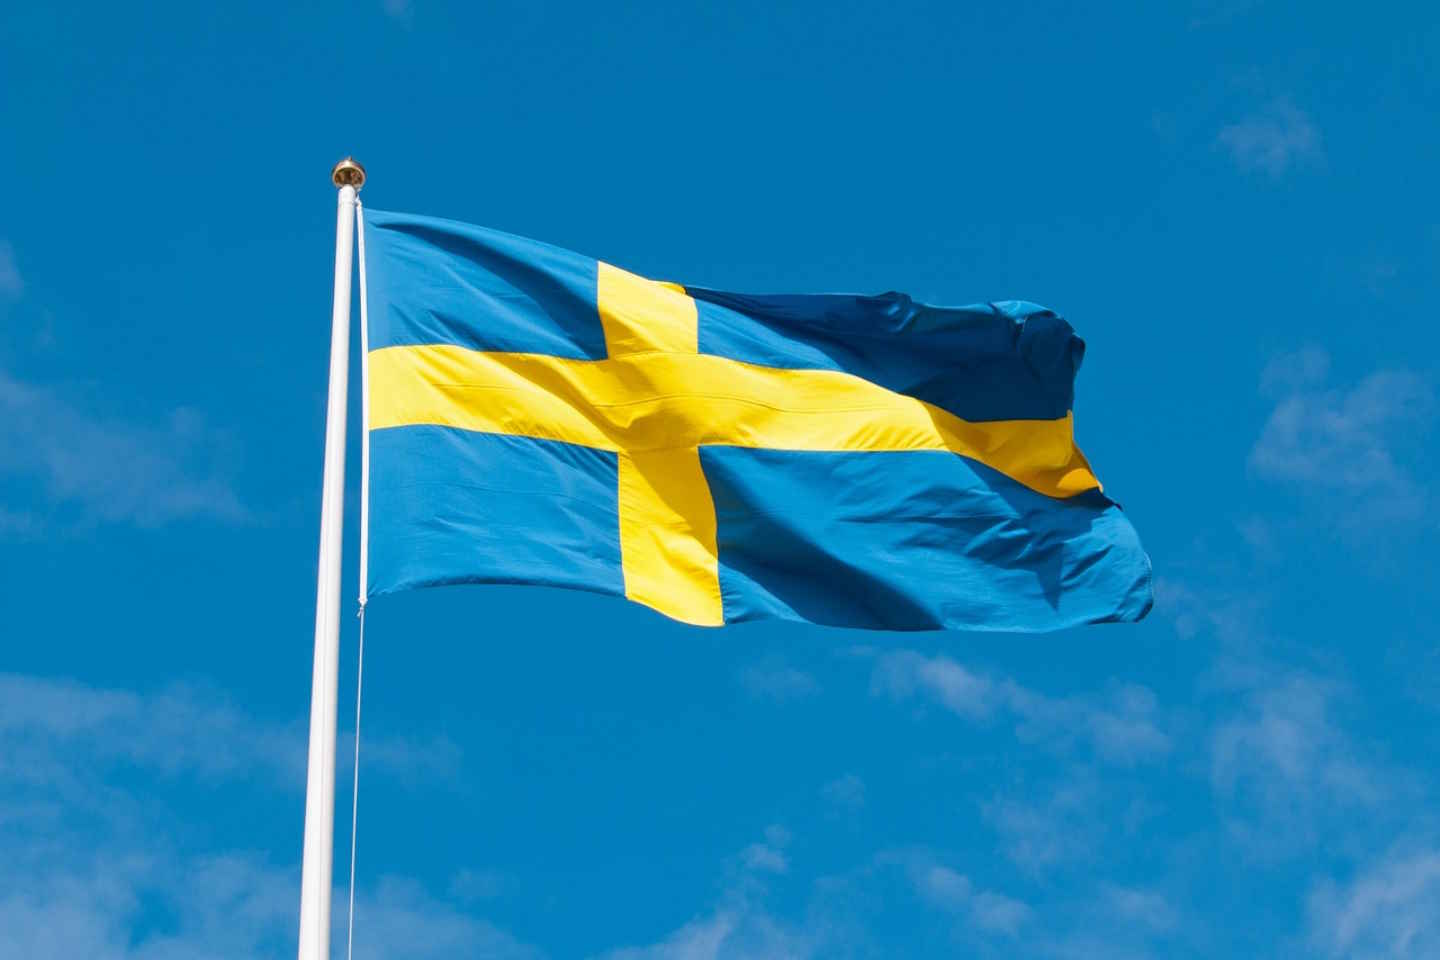 Новости мира / Политика в мире / Еврокомиссия согласилась с решением Швеции по "Северным потокам"